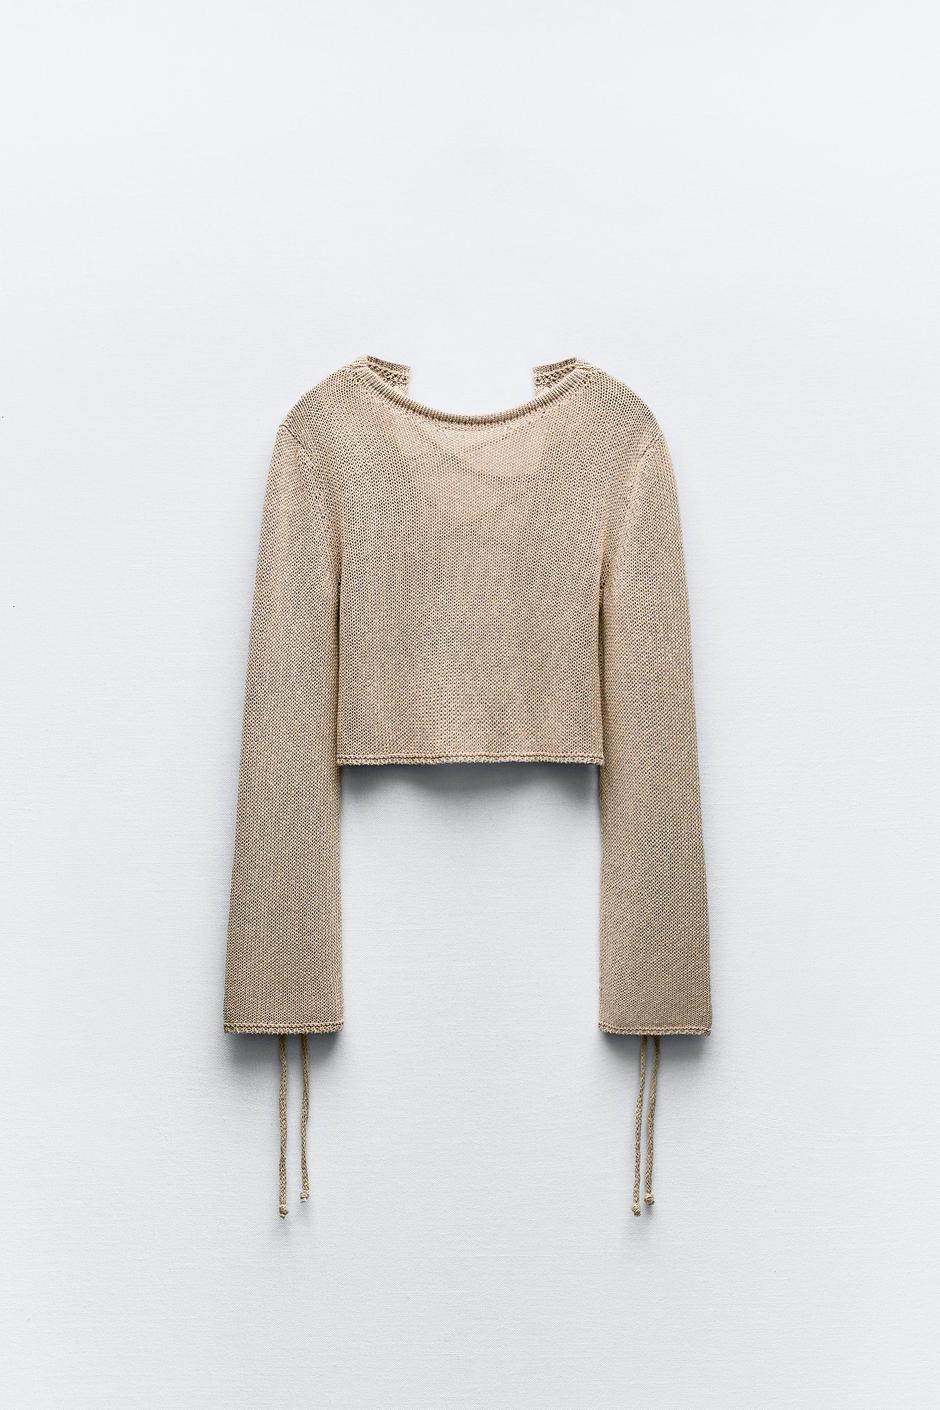 Foto: Zara, džemper za proljeće (25,95 eura) | Autor: 